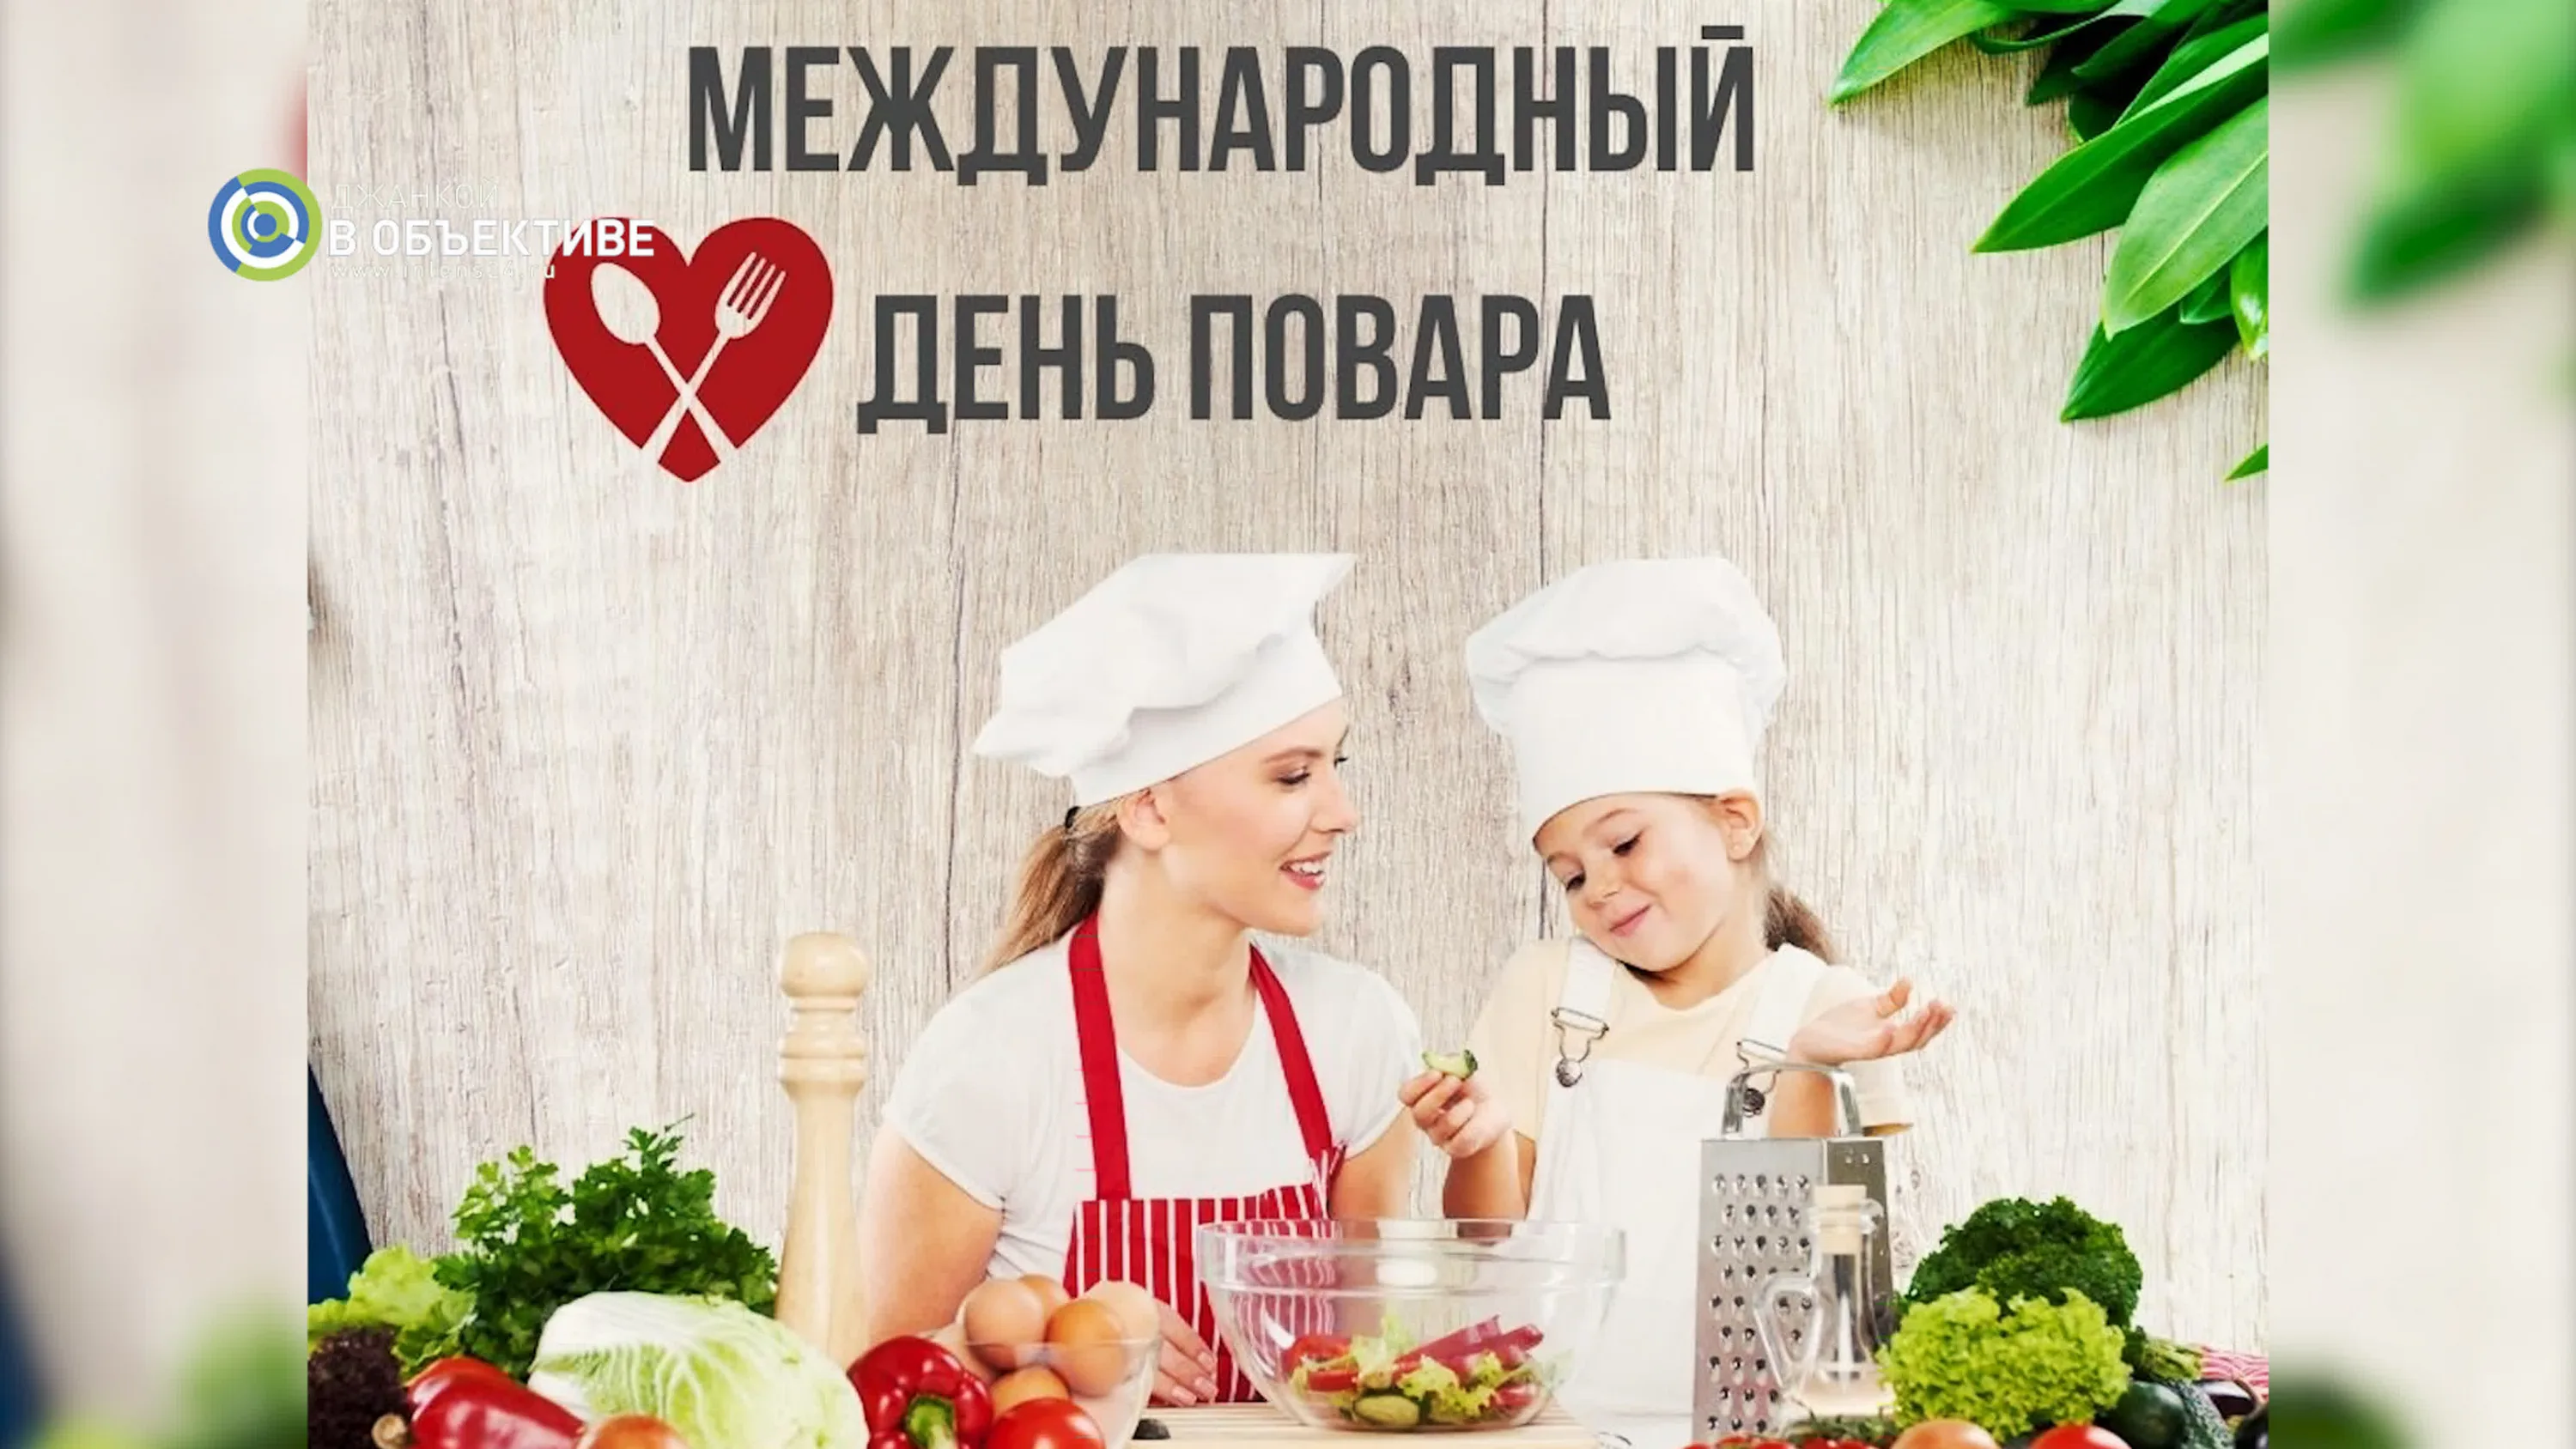 Фото Привітання з Днем повара на українській мові #49